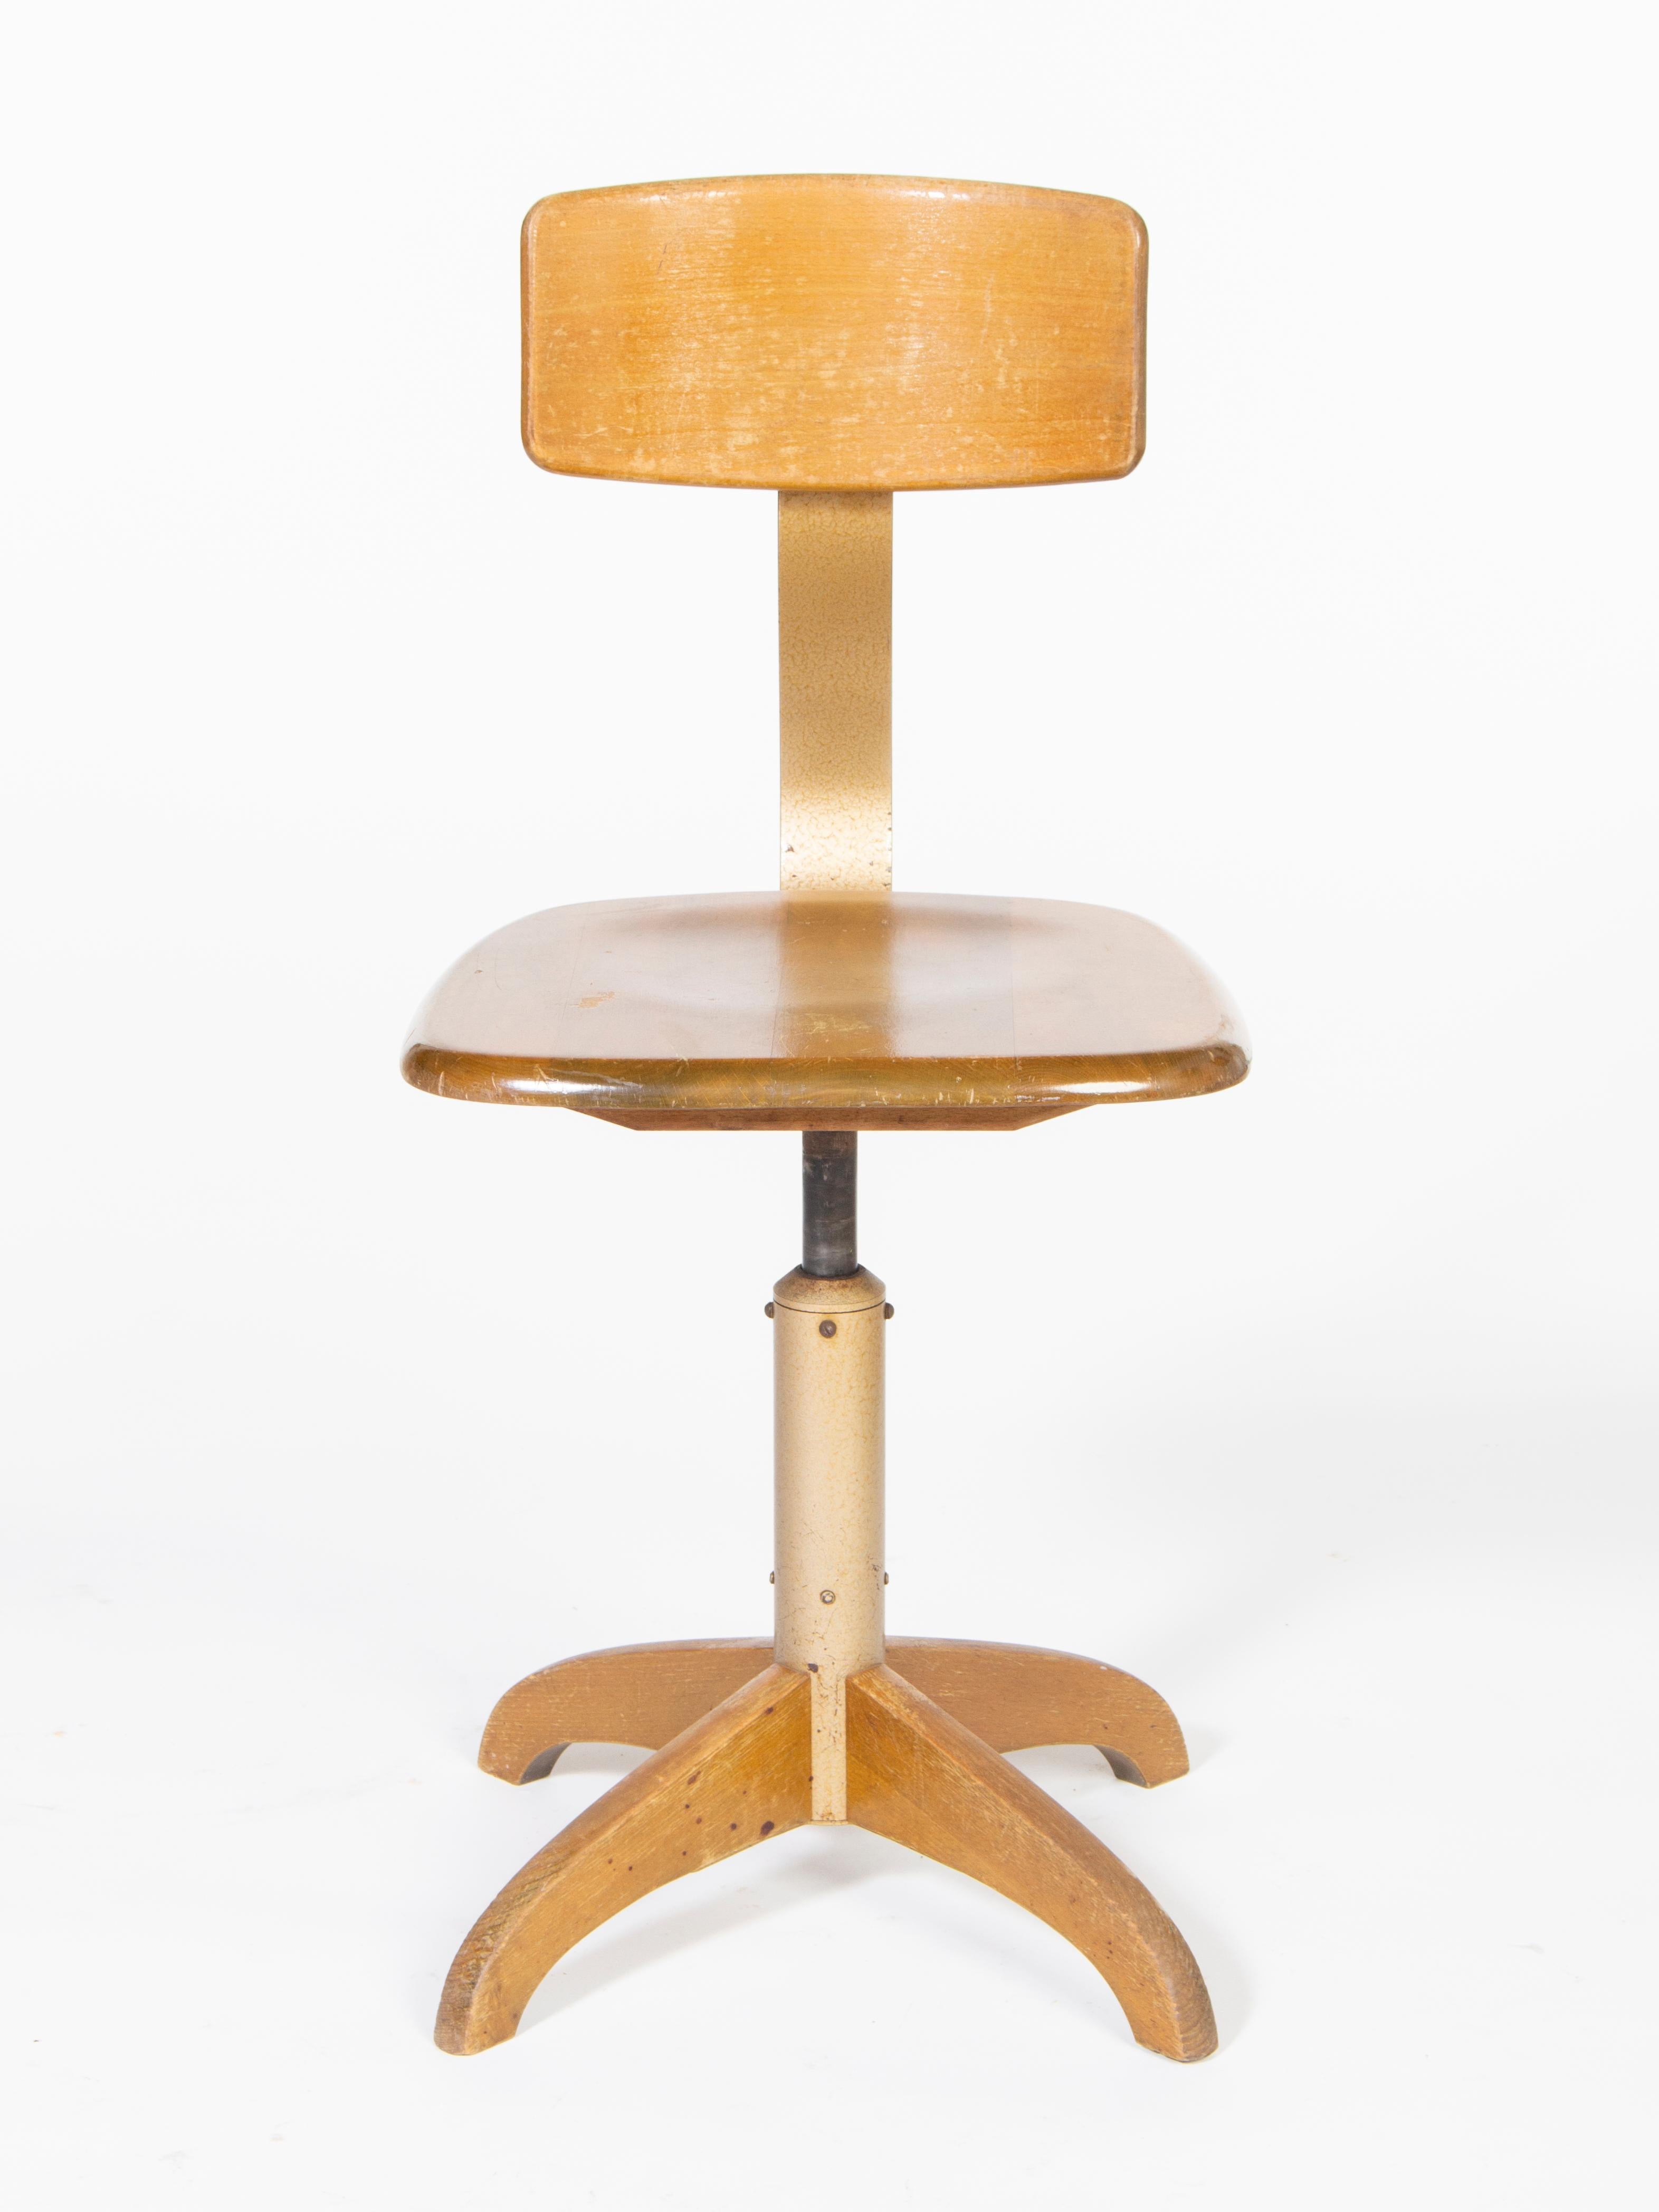 Chaise d'atelier pivotante en bois Bauhaus.
Fabriqué par Ama Elastik, numéro de modèle 364.
Hauteur d'assise réglable avec suspension hydraulique, ainsi que hauteur et distance d'inclinaison réglables.
 